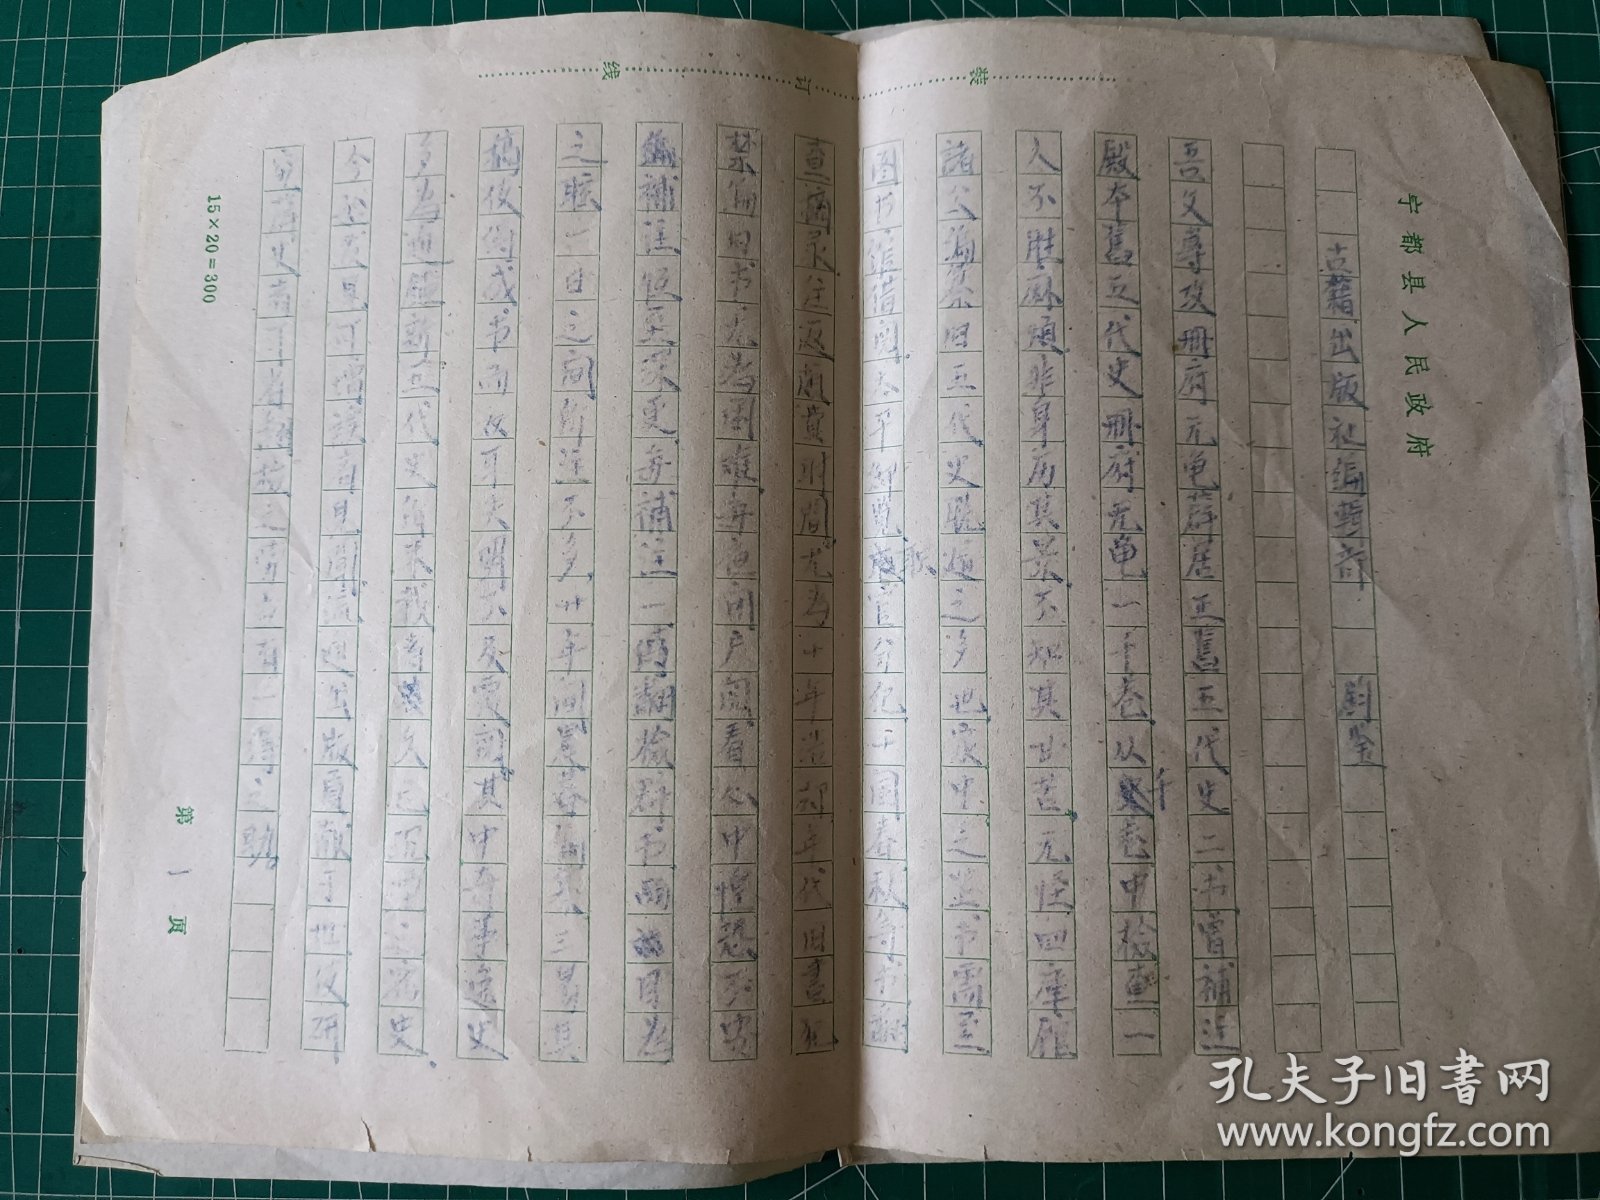 近代藏书家 昆山胡文楷 致 古籍出版社信札一份 两页全，内容为王人裕。附录部分存一页，不知道全不全。用的是复写纸书写。此份为复写纸。